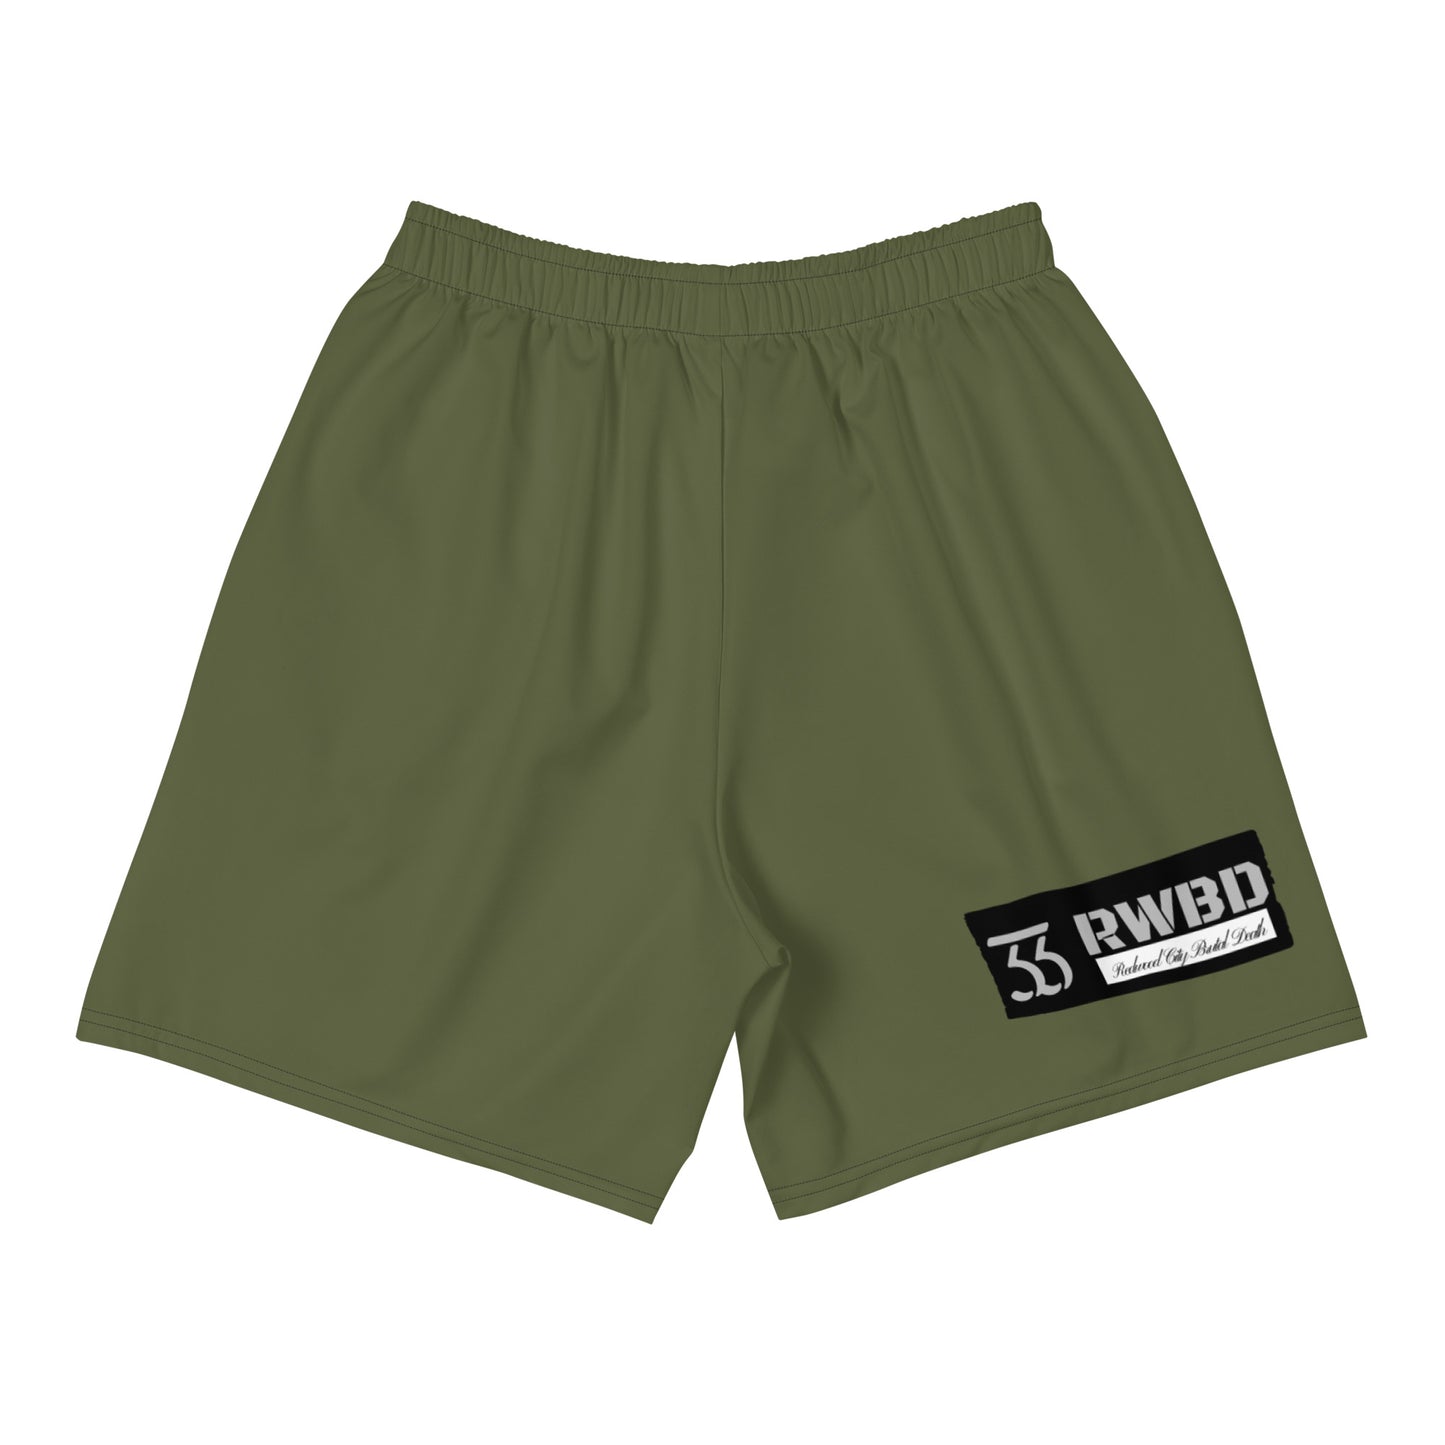 Slime n Scram Shorts - Men's, Green